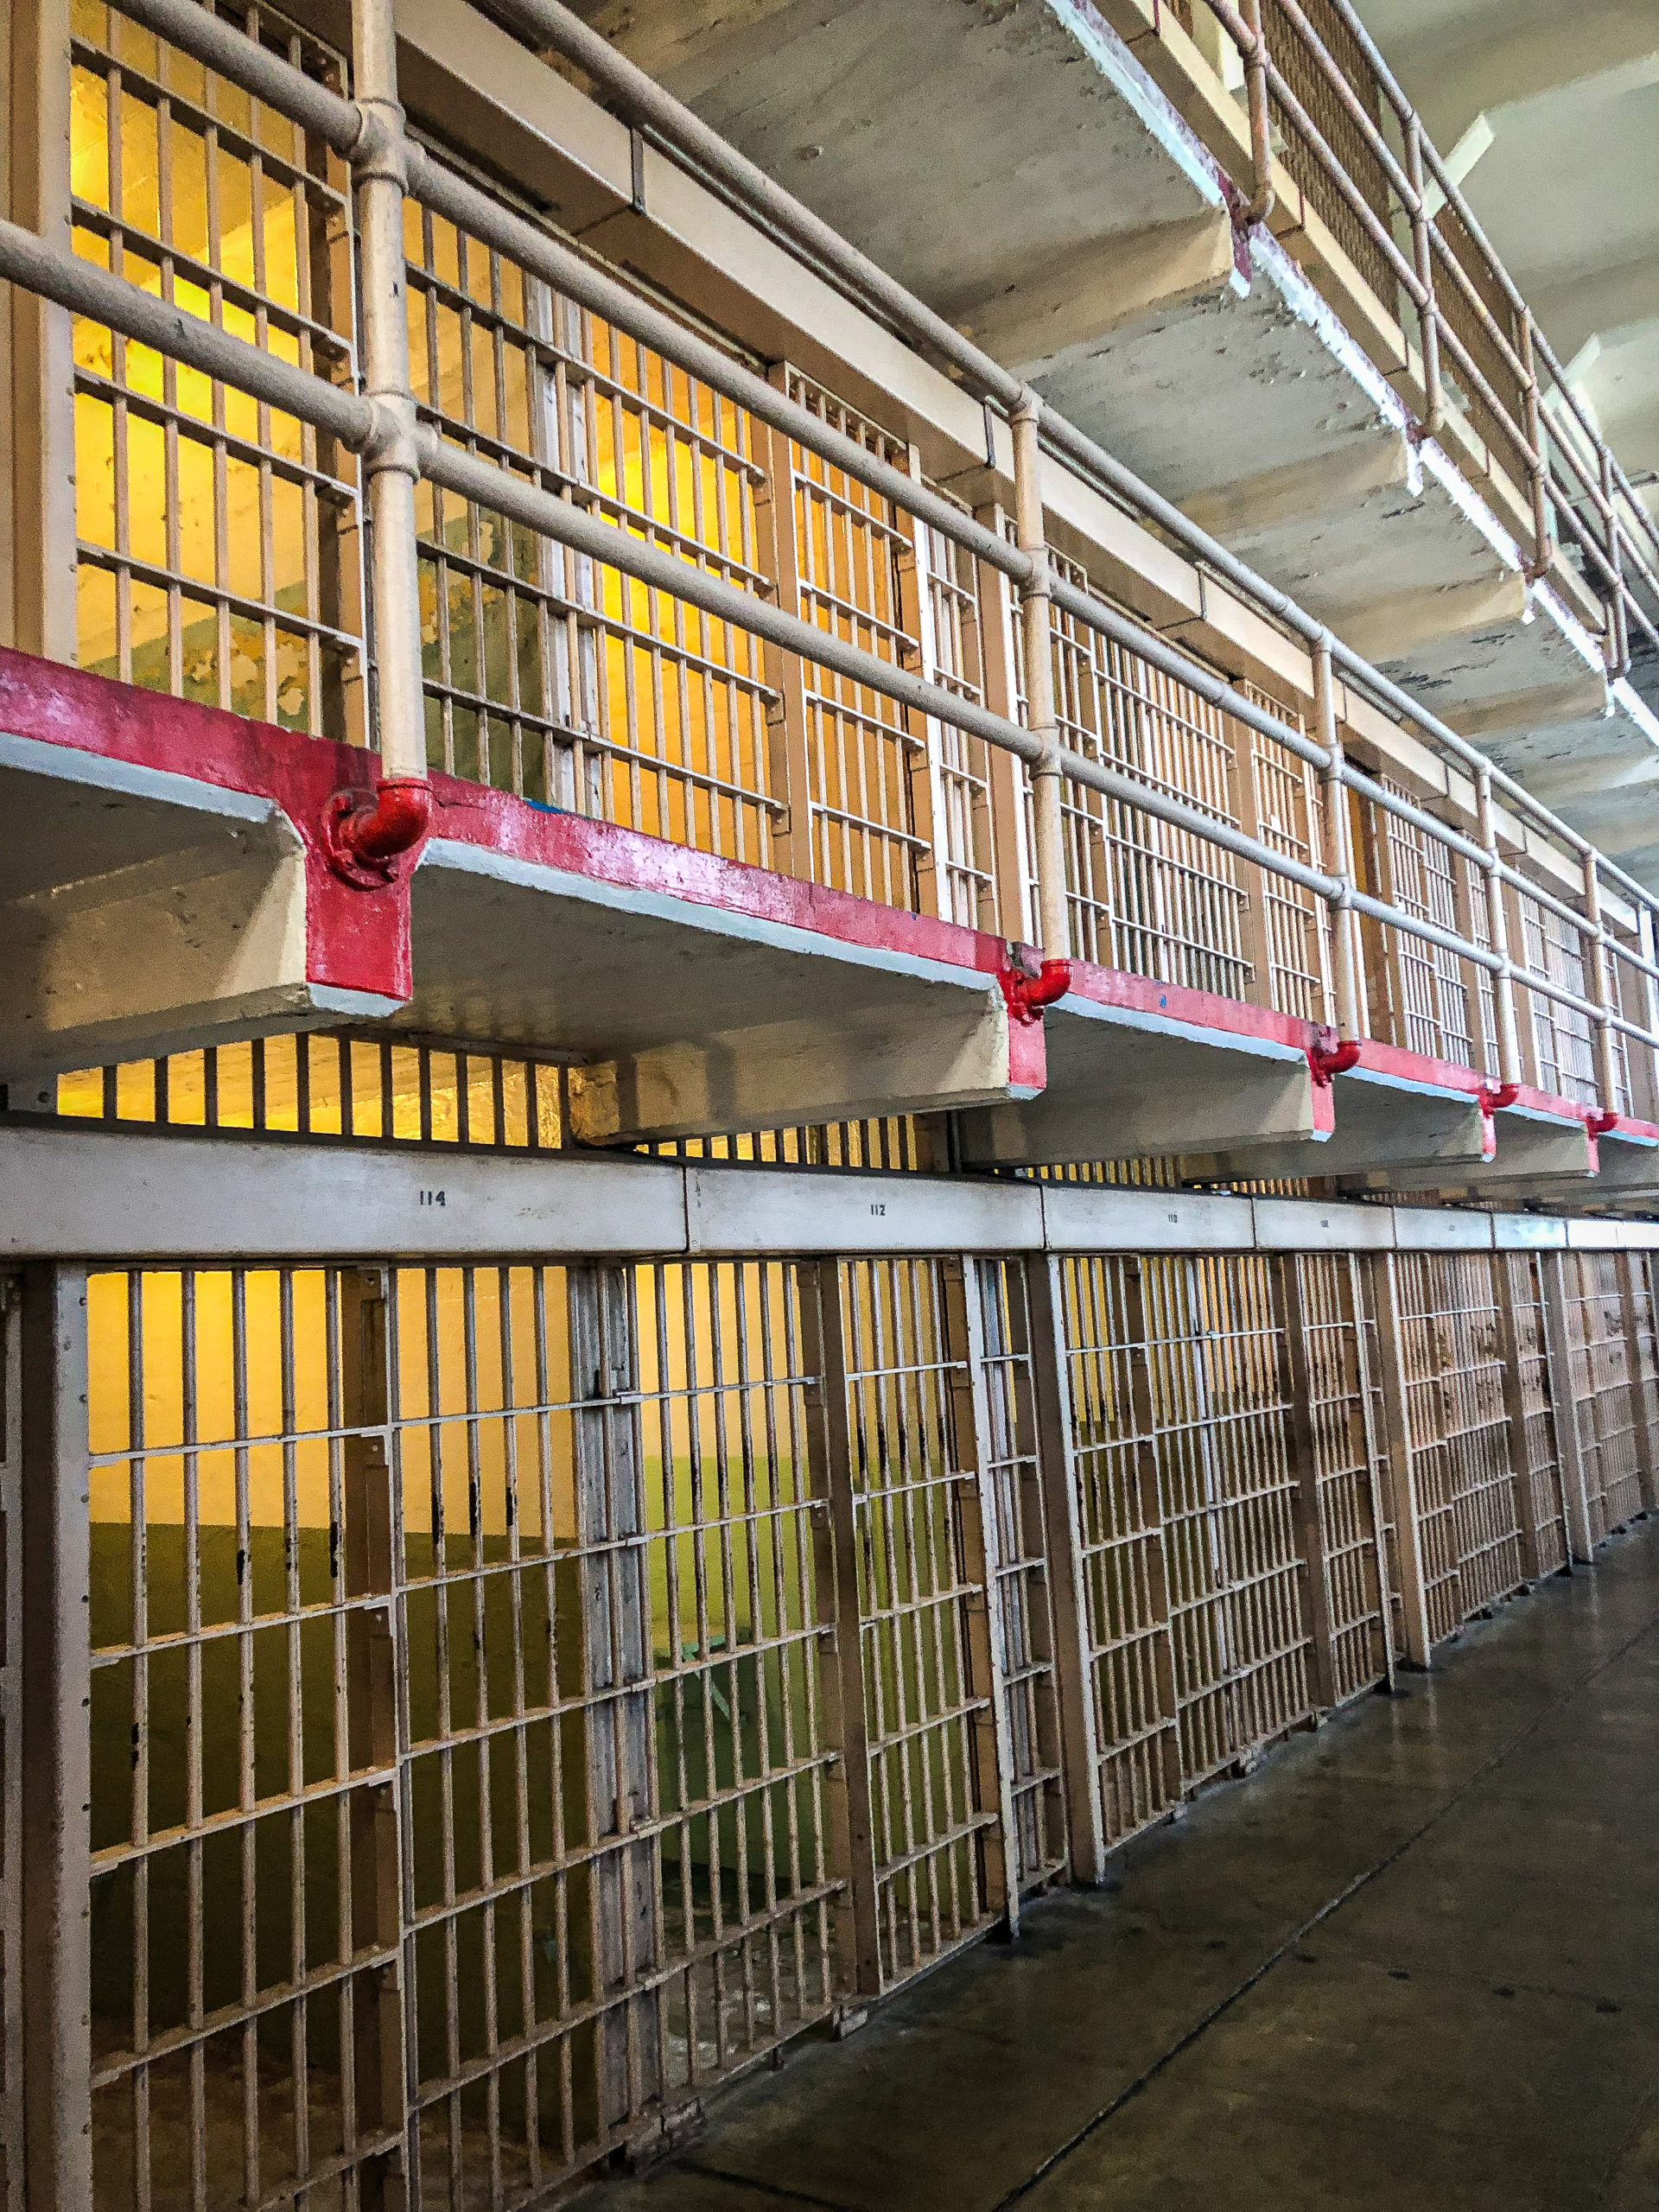 Cells in Alcatraz prison in San Francisco